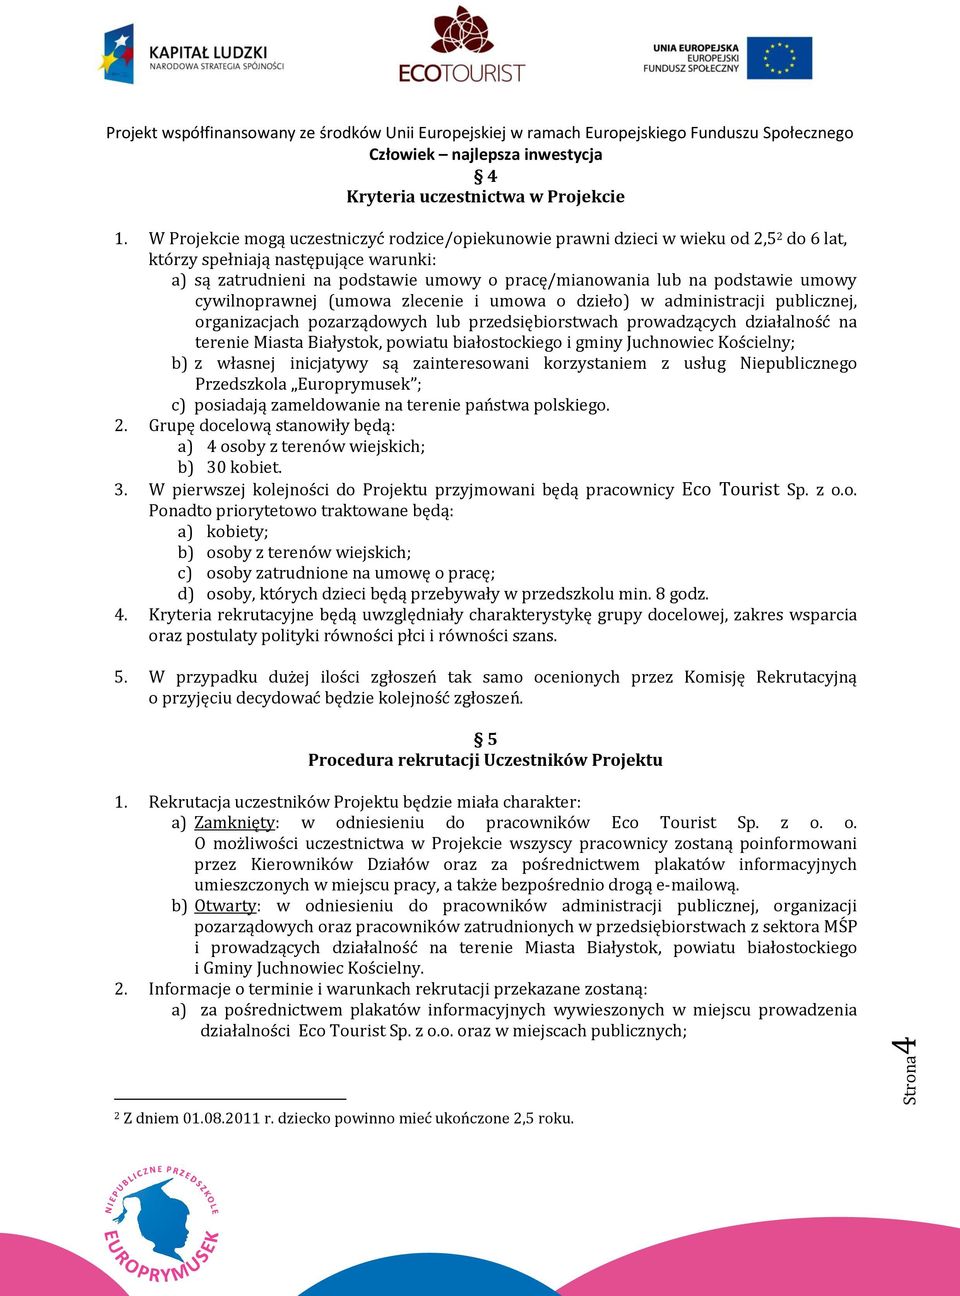 podstawie umowy cywilnoprawnej (umowa zlecenie i umowa o dzieło) w administracji publicznej, organizacjach pozarządowych lub przedsiębiorstwach prowadzących działalność na terenie Miasta Białystok,